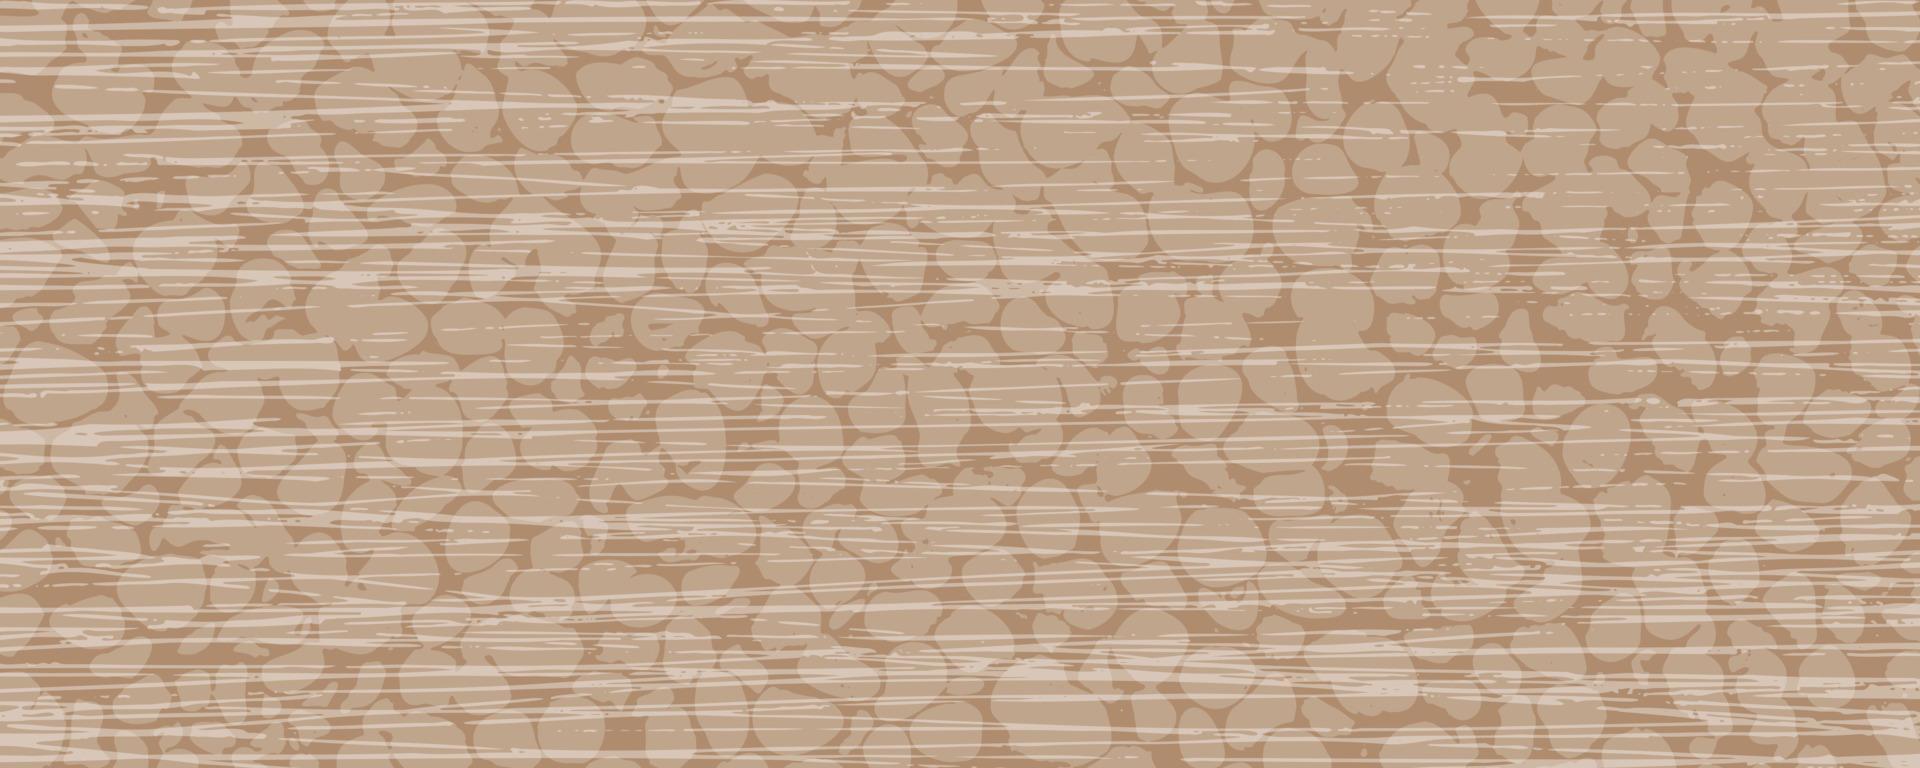 elegante vector delicado antecedentes en beige-marrón tonos con el textura de pequeño piedras y longitudinal pliegues resumen antecedentes con piedras y rayas. un elegante modelo para tu diseño.